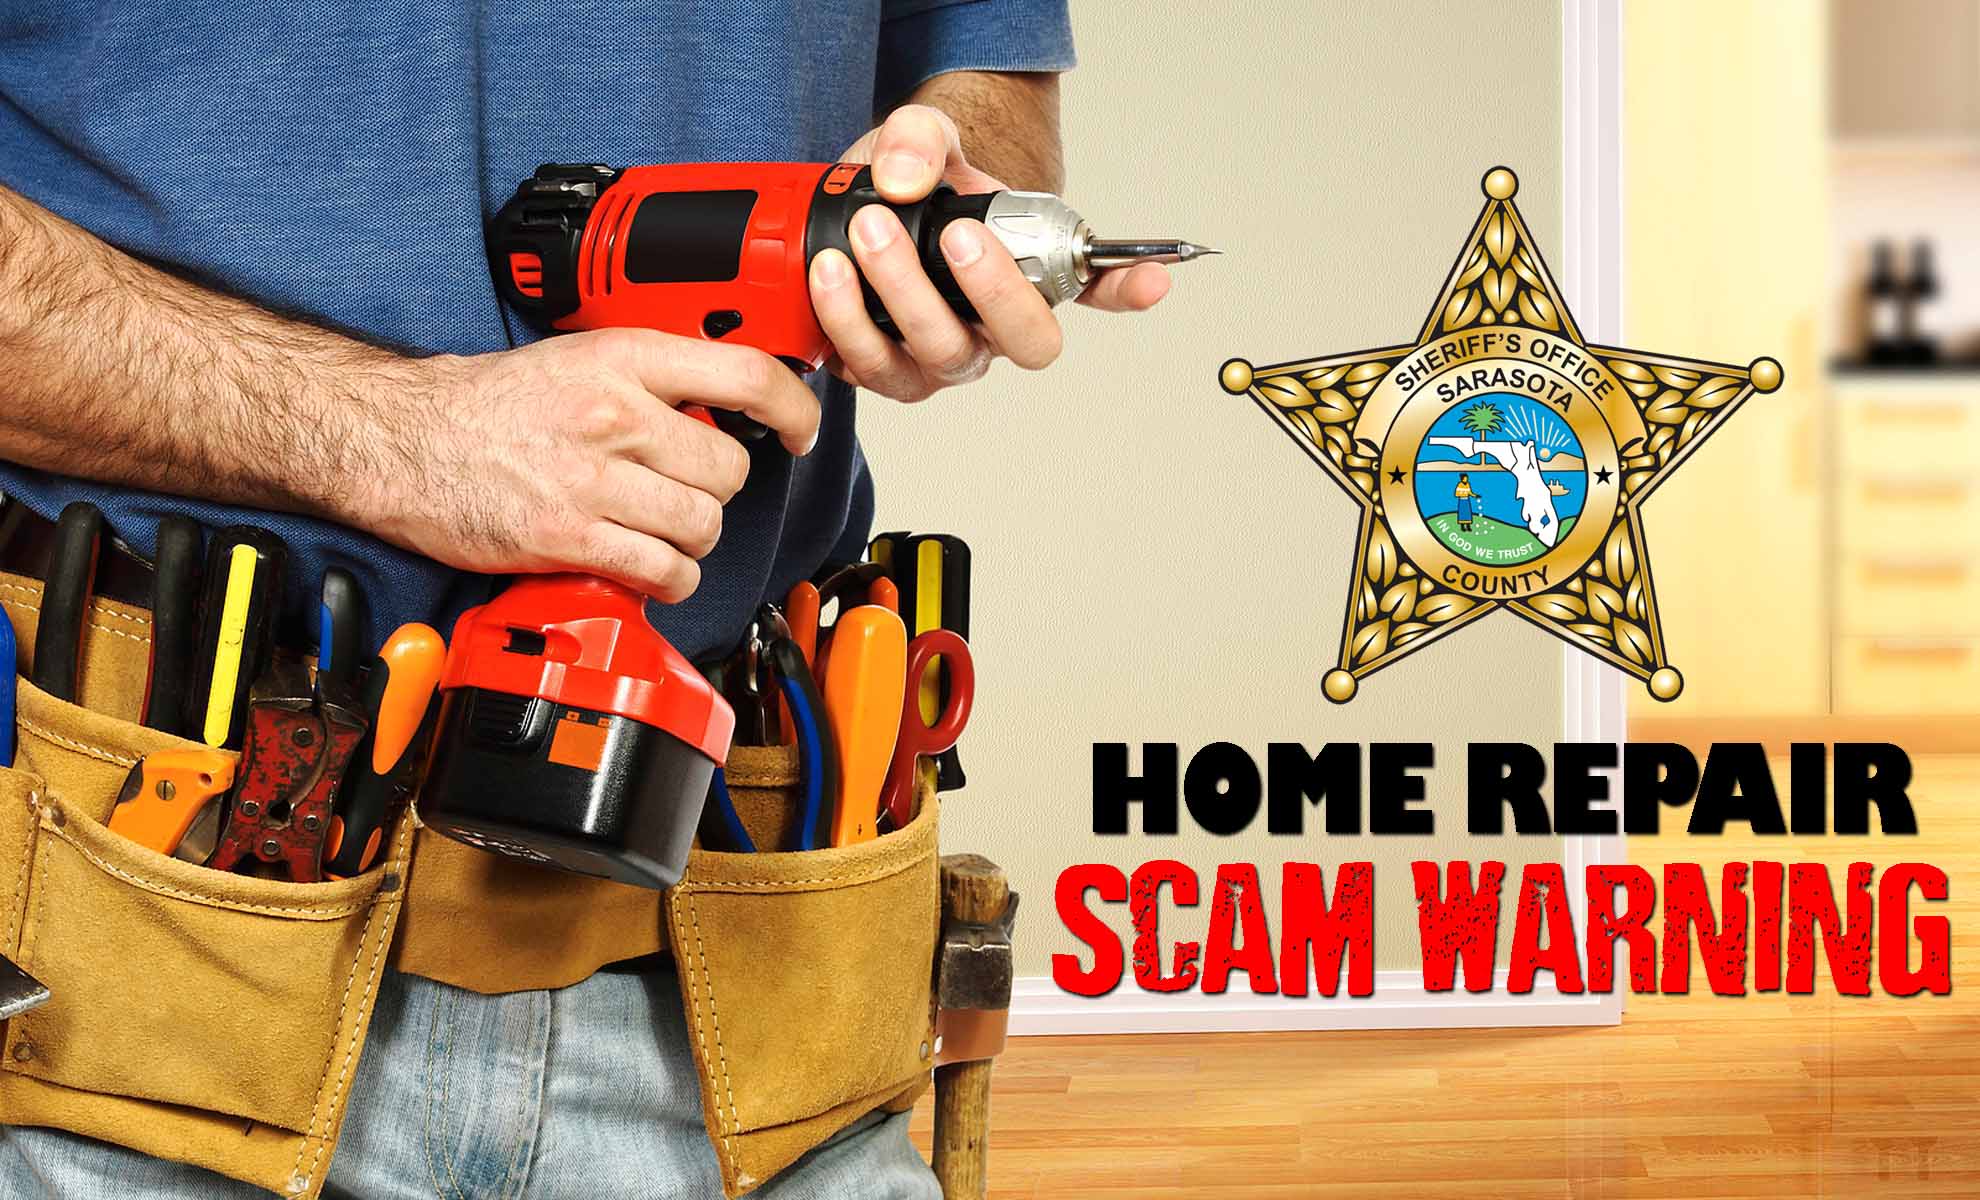 Home Repair Scam Warning